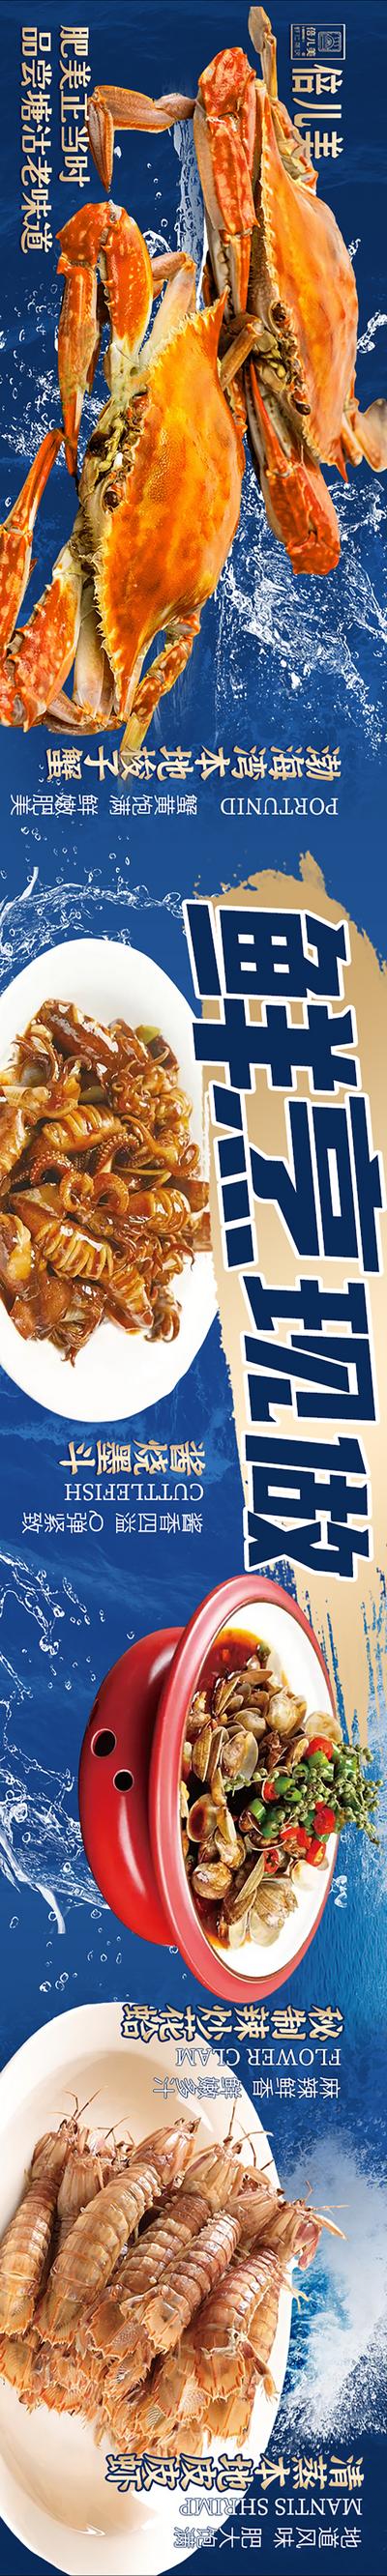 南门网 电商海报 banner 美食 海鲜 螃蟹